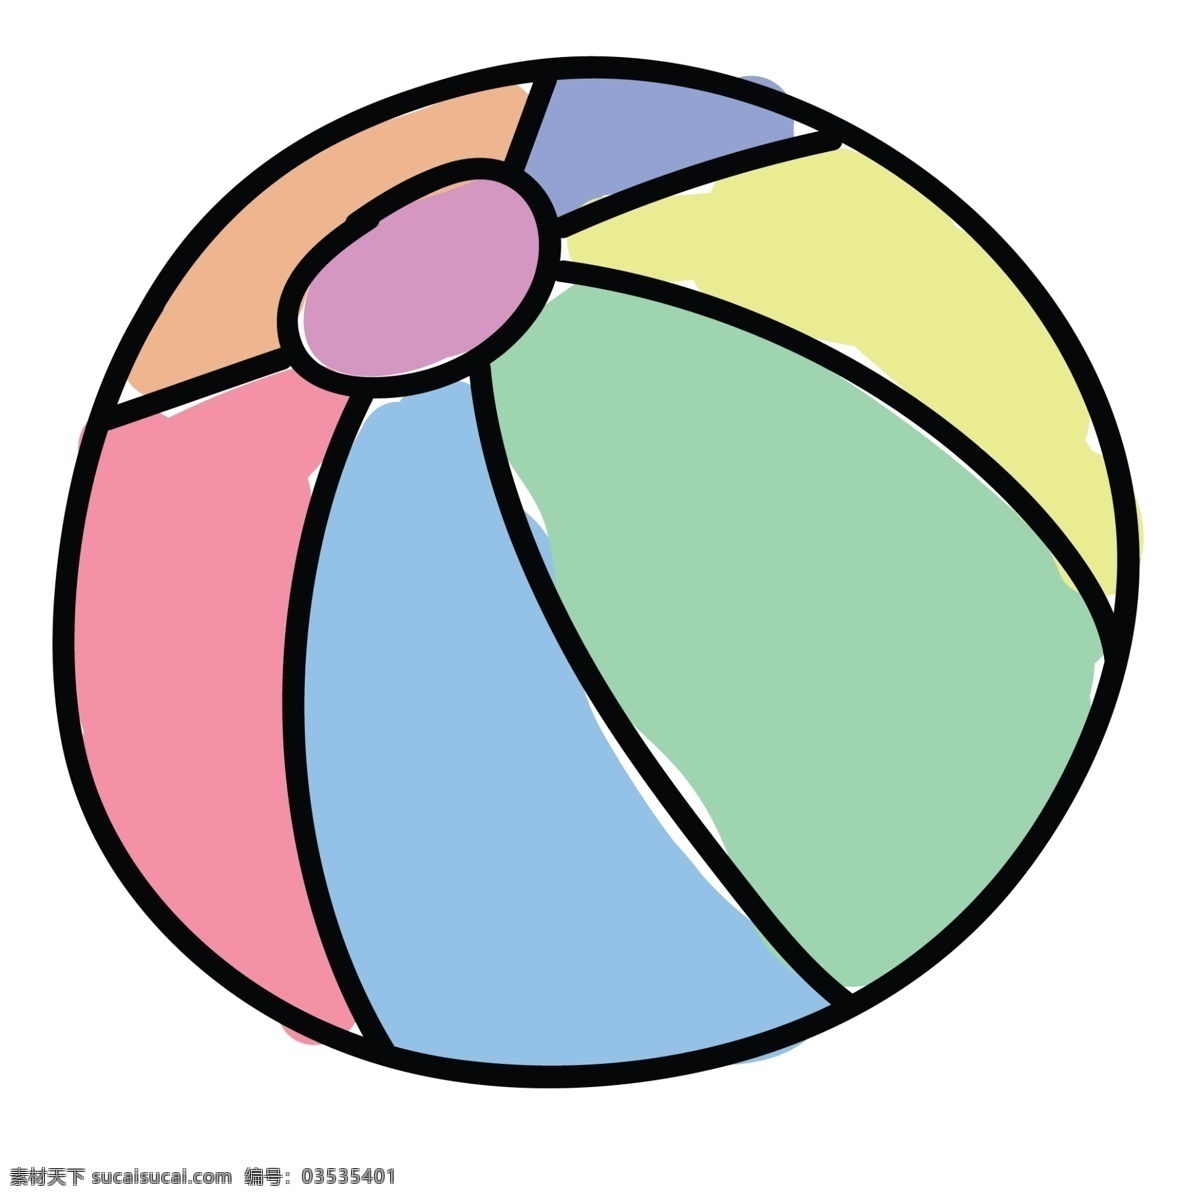 圆圆 皮球 免 抠 图 彩色皮球 运动中的皮球 卡通手绘 手绘图案 好多颜色的球 圆圆的皮球 免抠图